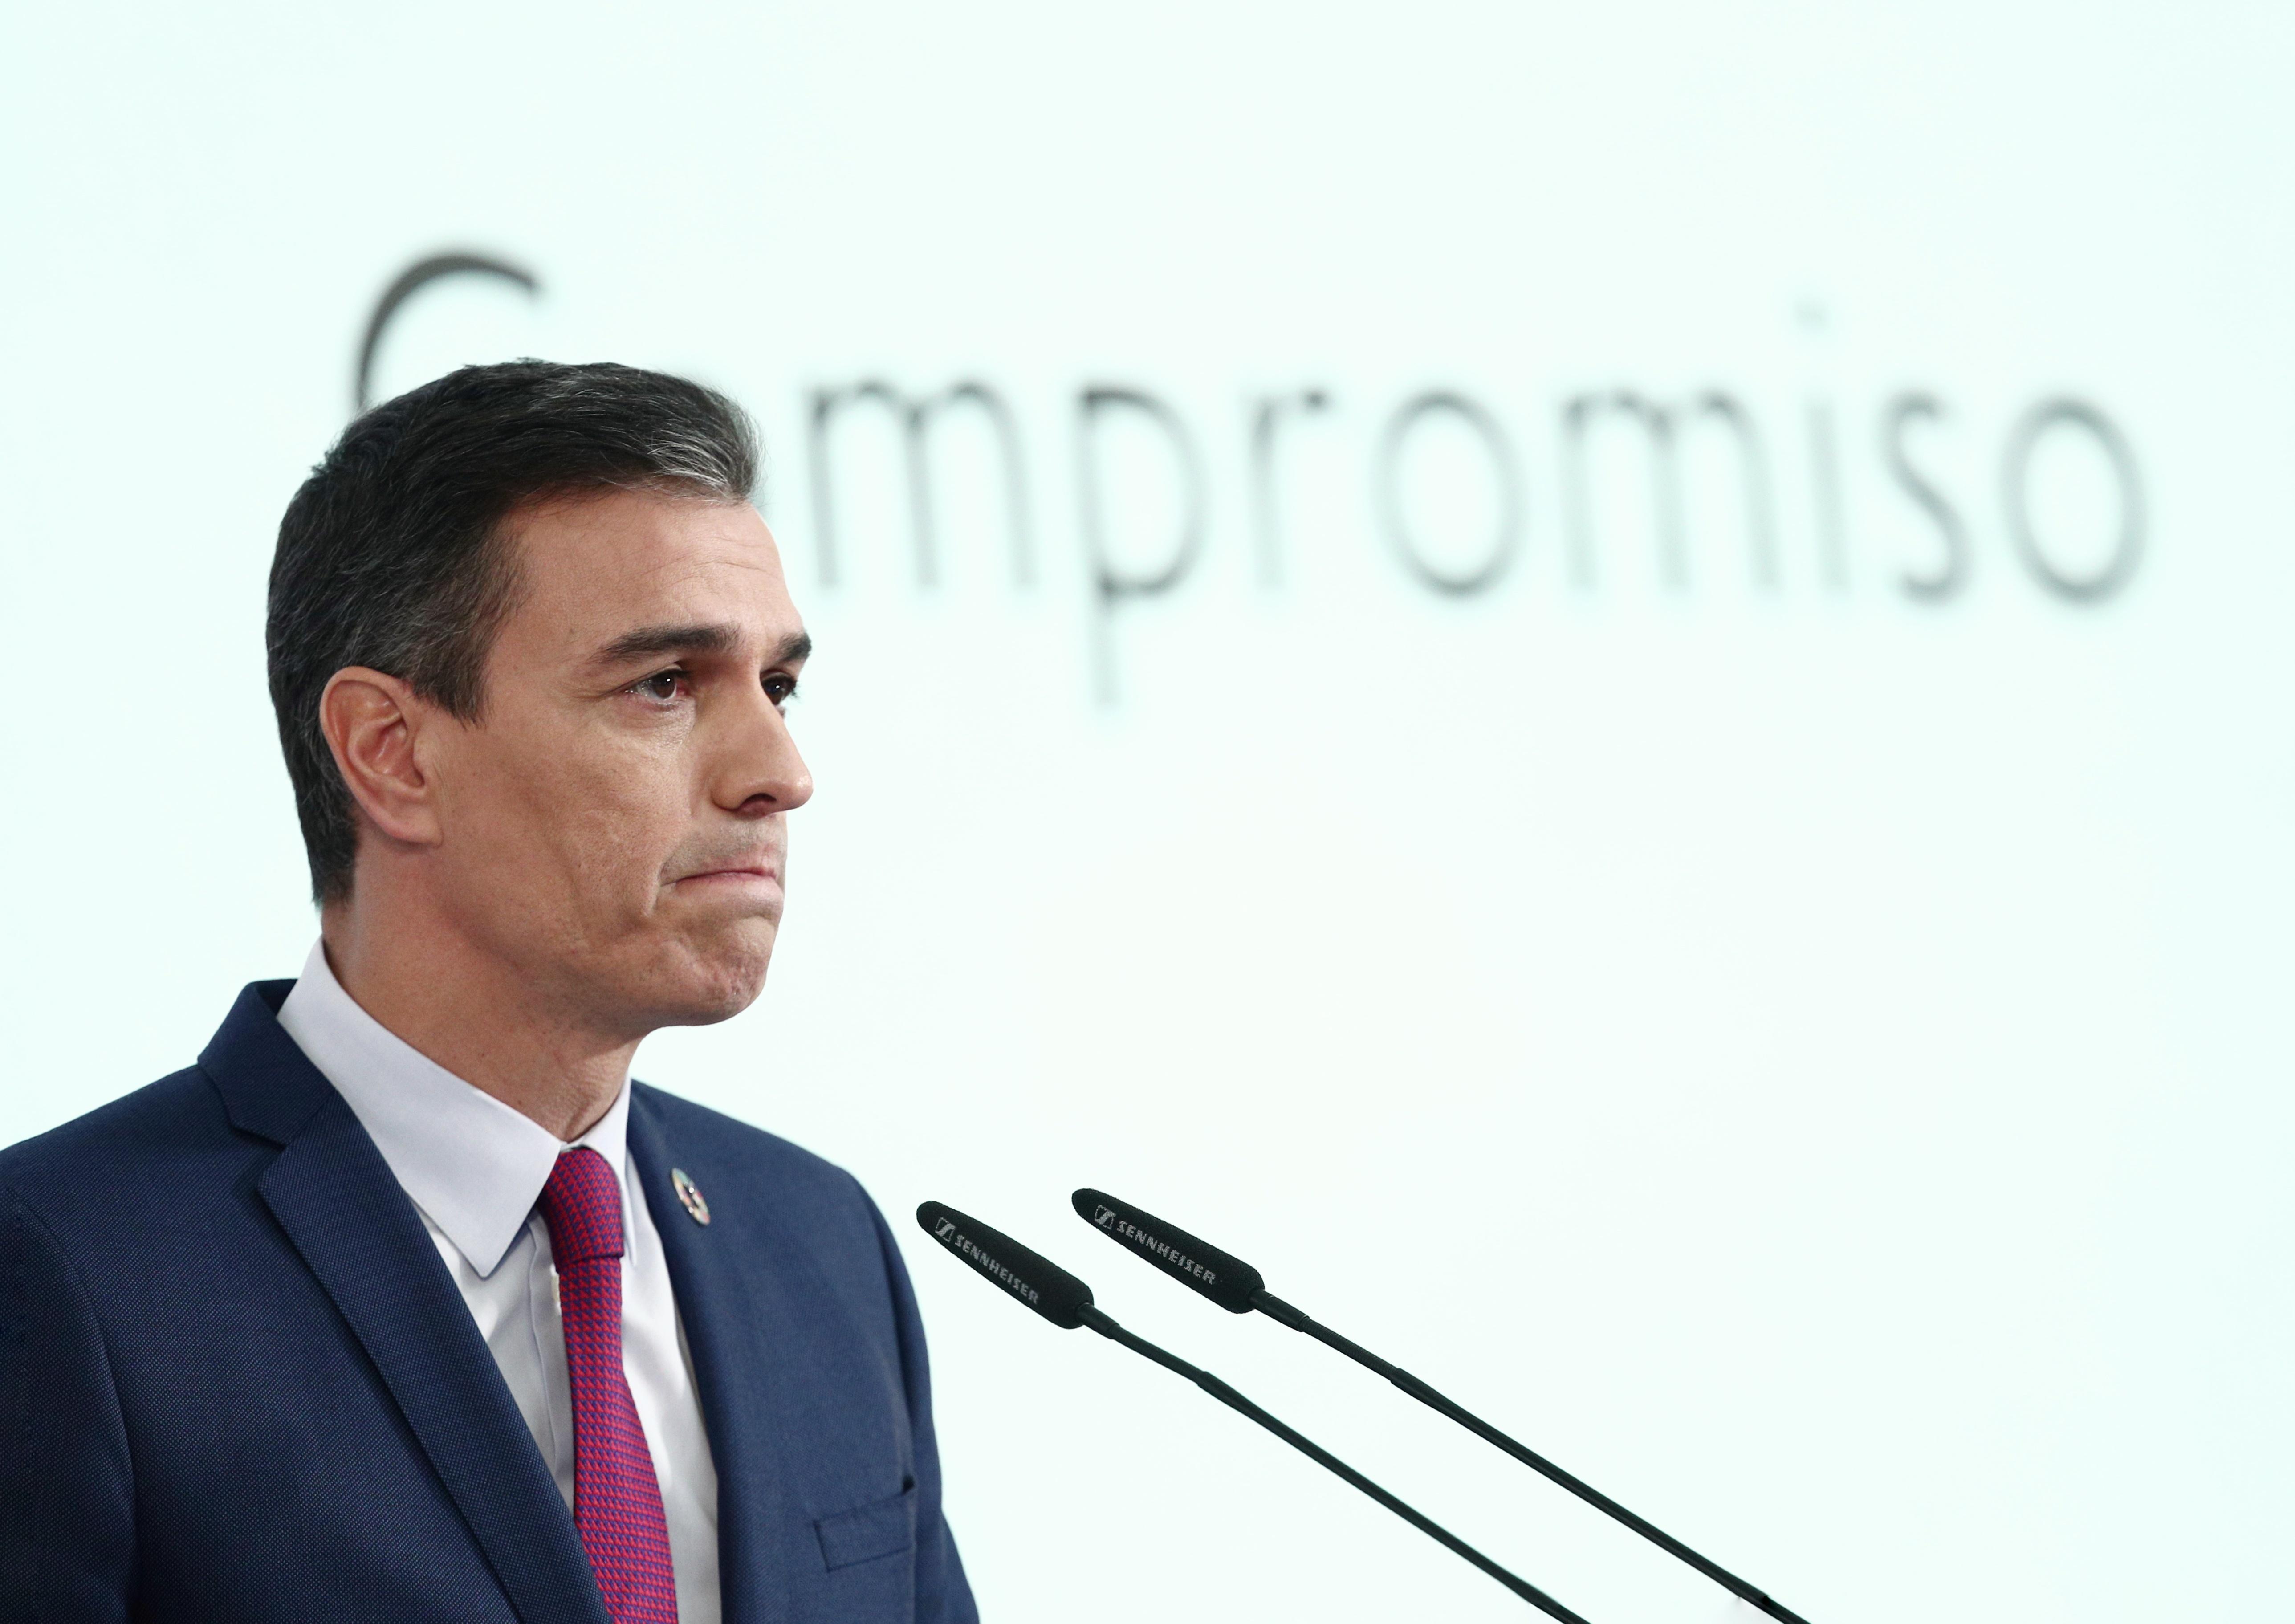 El presidente del Gobierno, Pedro Sánchez durante la rueda de prensa para presentar el primer informe de rendición de cuentas del Gobierno. Fuente: Europa Press.